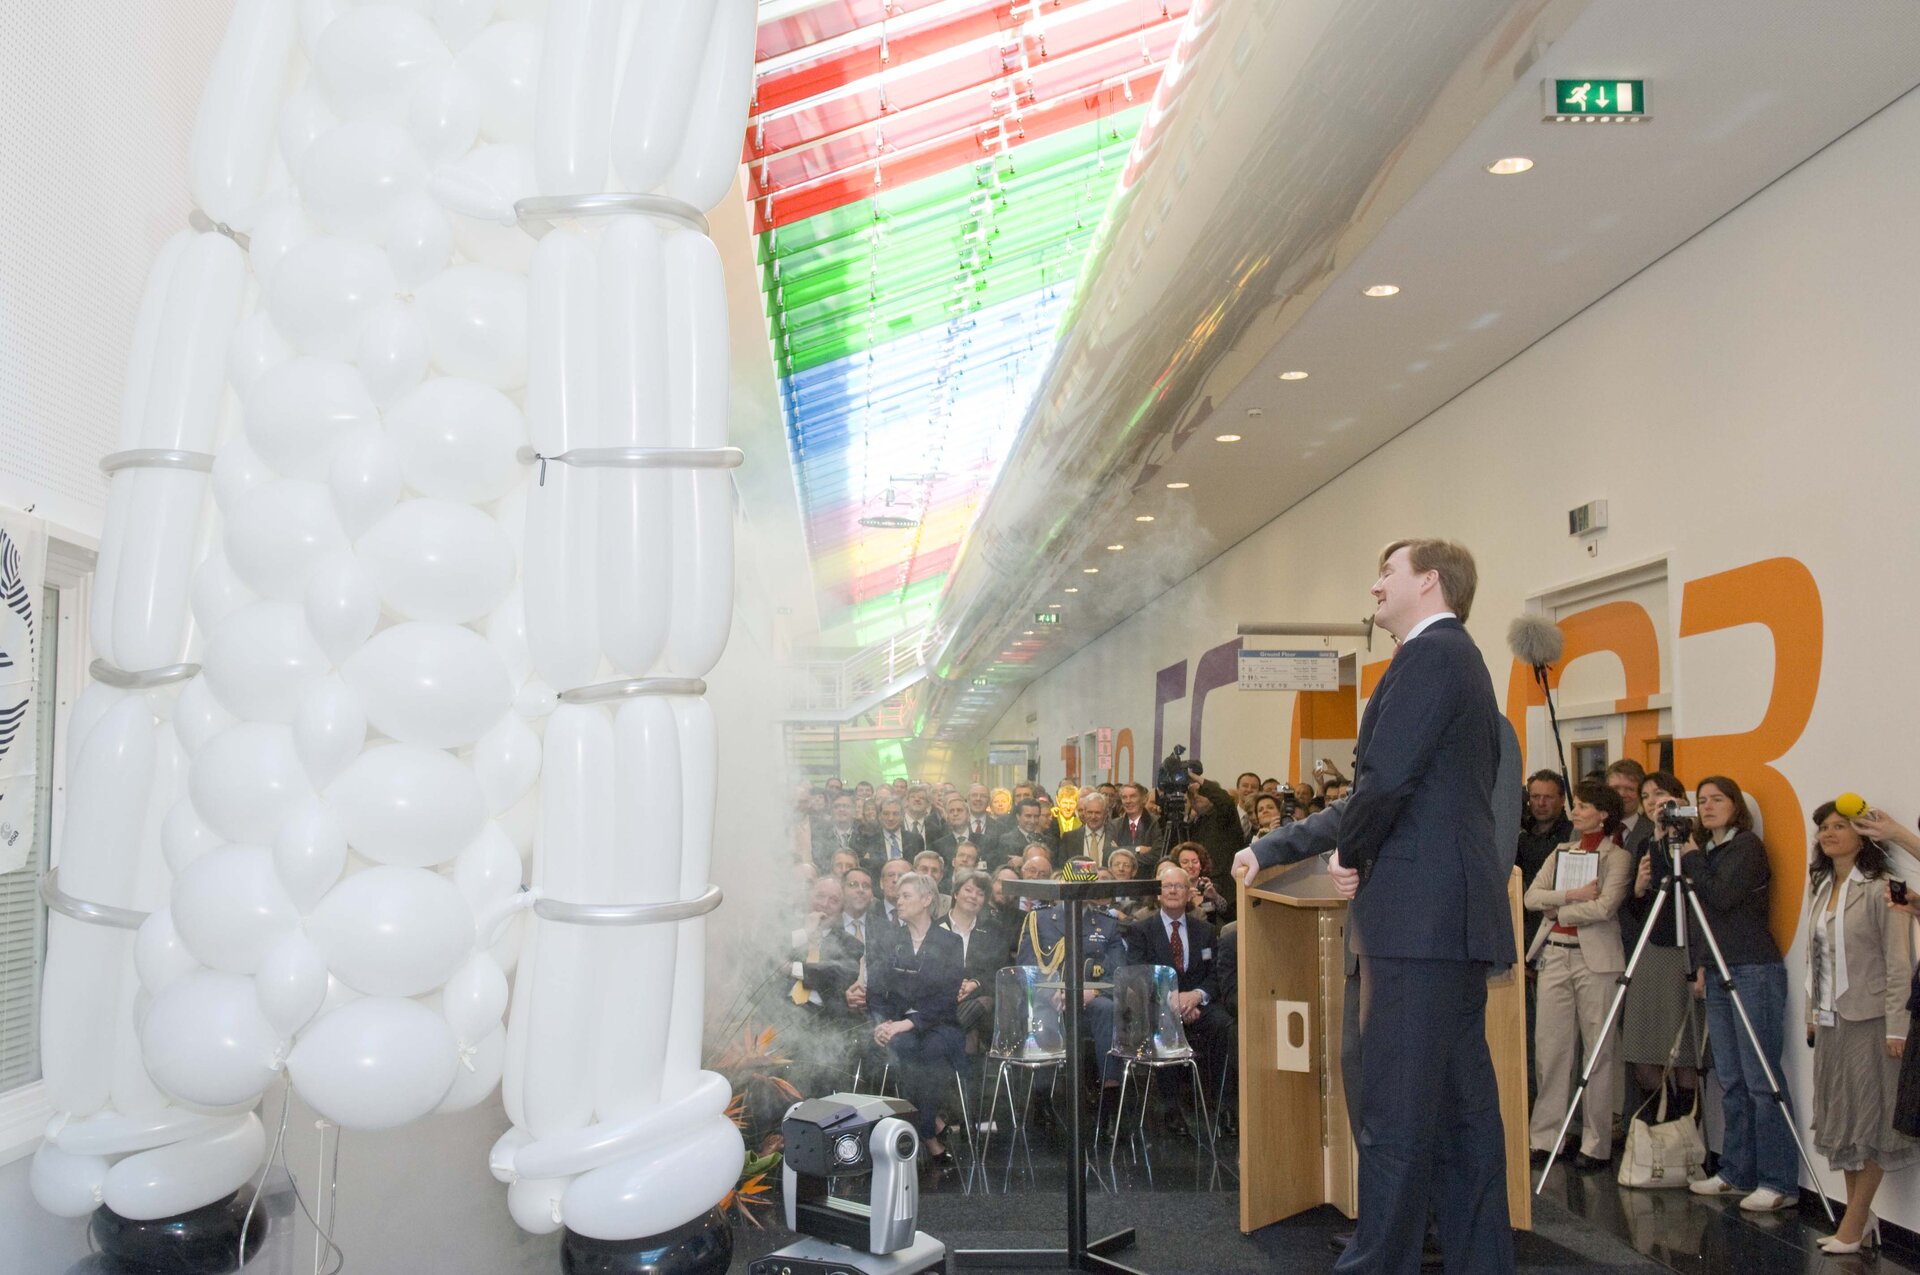 Prince Willem-Alexander opens ESTEC's new lab corridor in 2008